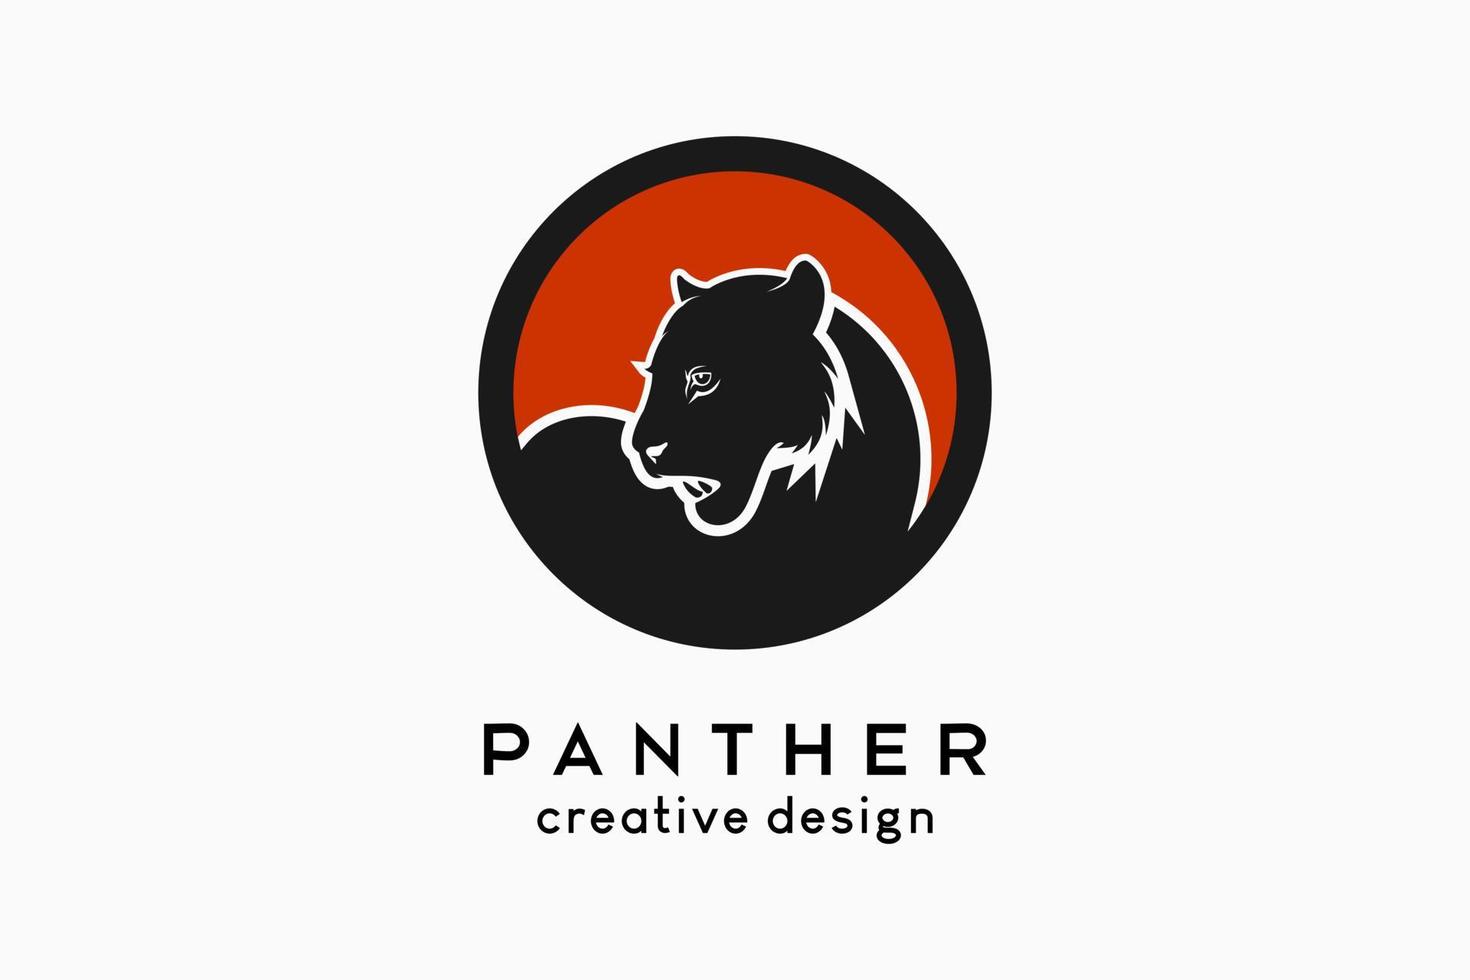 diseño del logotipo panter, silueta panter en un círculo con un concepto creativo simple vector